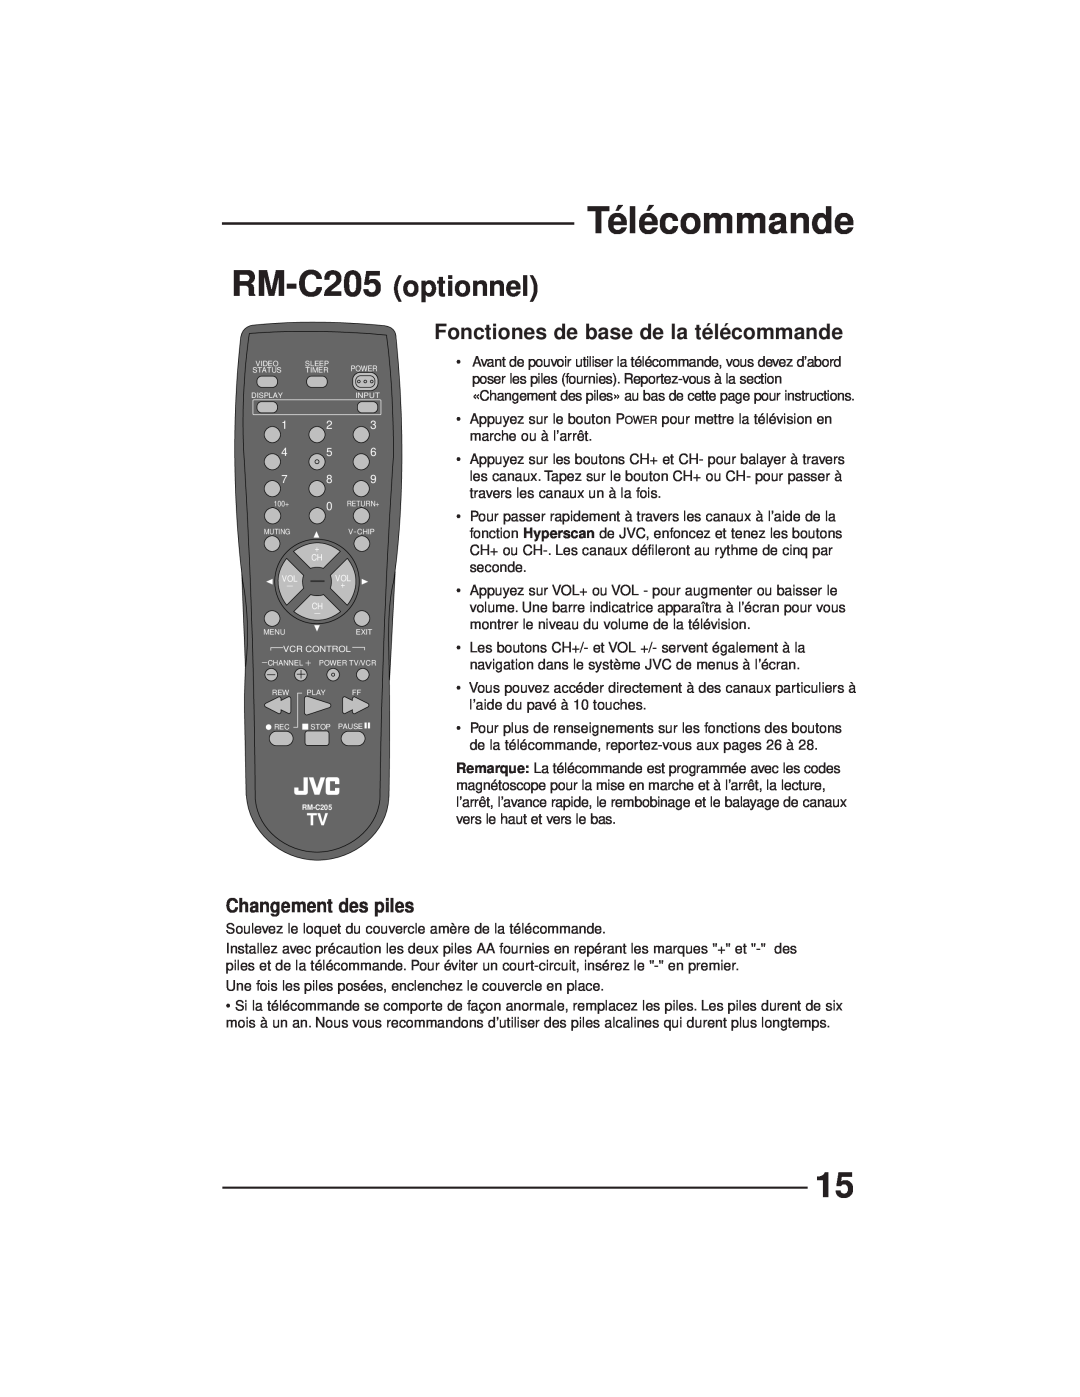 JVC AV-27GFH manual Télécommande, optionnel, Fonctiones de base de la télécommande, RM-C205, Changement des piles 